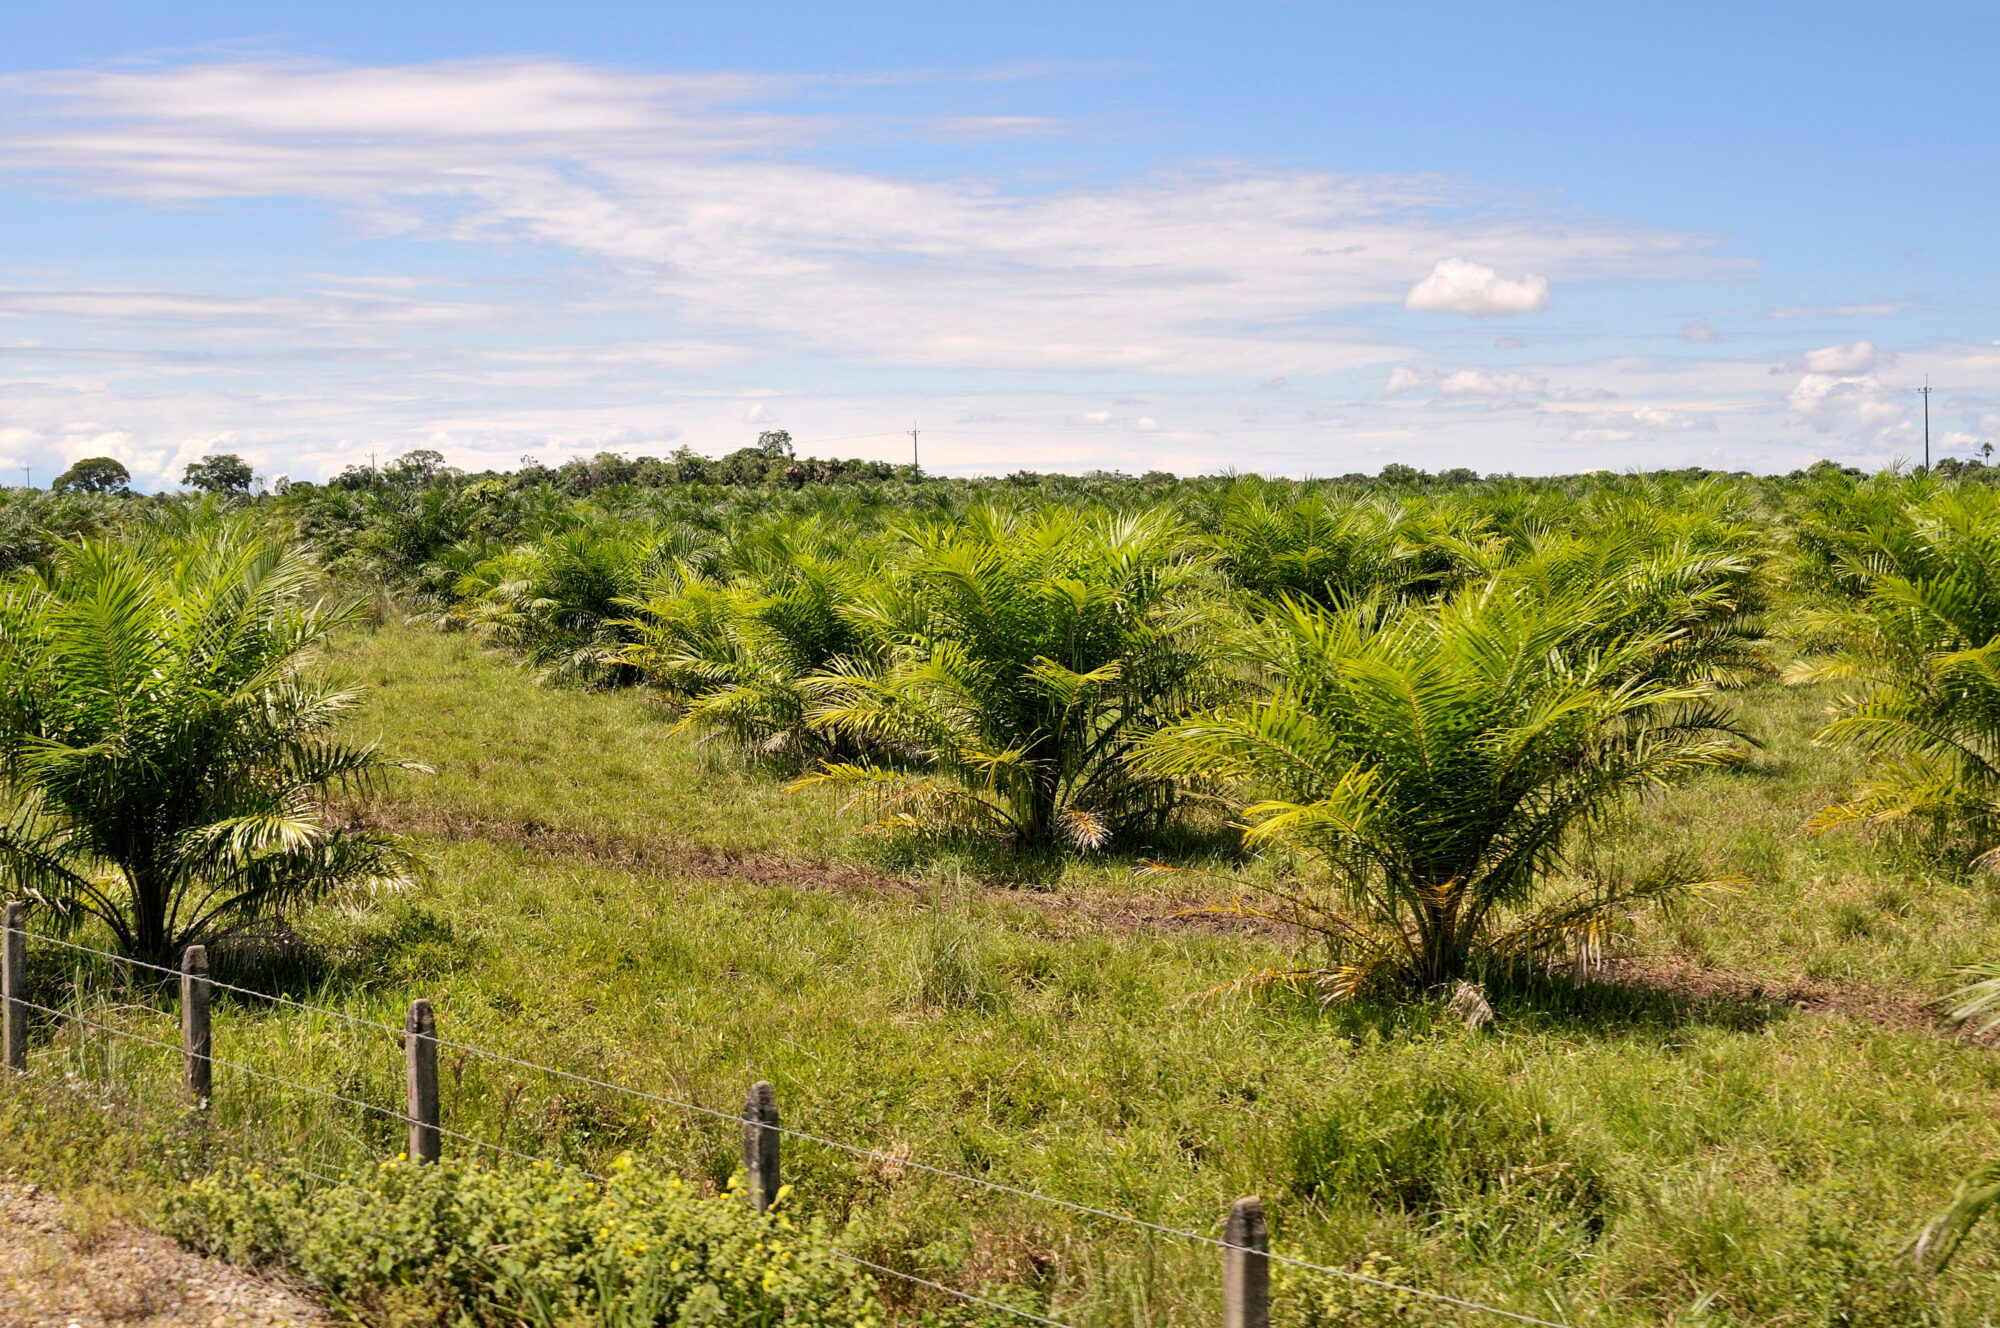 <p>Una plantación de palma aceitera en el departamento de Meta, Colombia. Tras un importante crecimiento de la industria en las últimas décadas, el país se ha convertido en el cuarto productor y exportador mundial de aceite de palma, y casi un tercio de su producción cumple con la certificación de sostenibilidad. Pero se enfrenta a retos para mantener y aumentar este porcentaje. (Imagen: Florian Kopp / Alamy)</p> <p>&nbsp;</p>